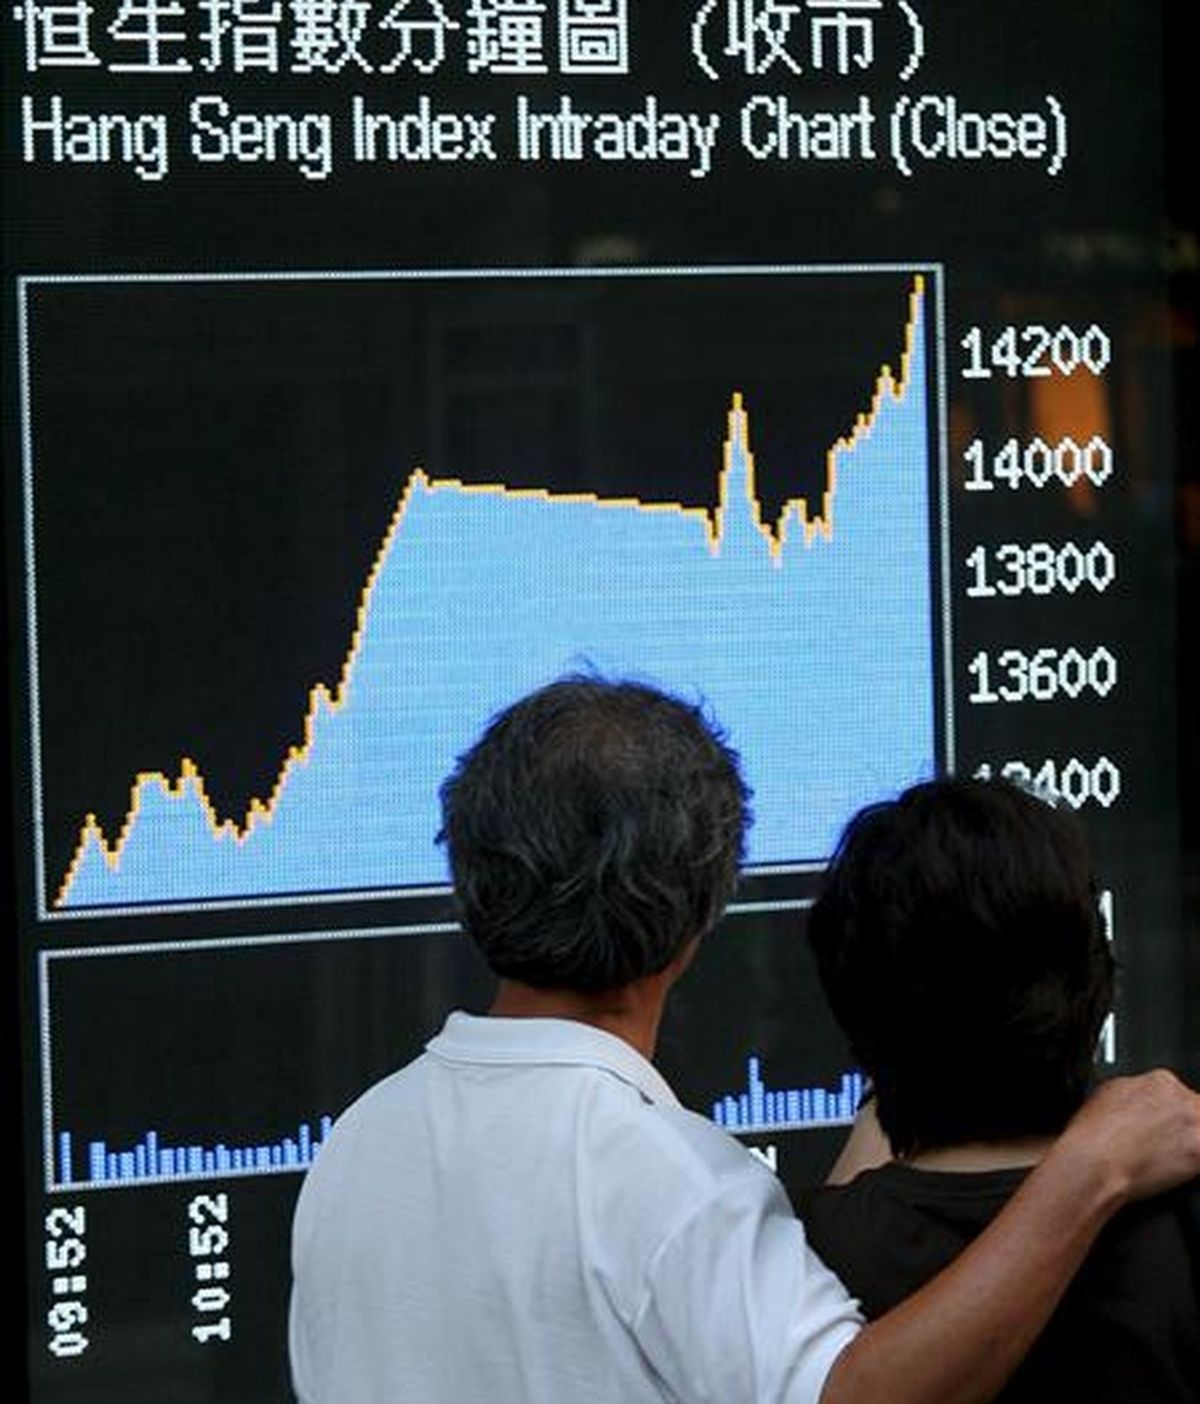 Una pareja se detiene ante una pantalla electrónica que informa del valor del índice Hang Seng Index, en Hong Kong. EFE/Archivo